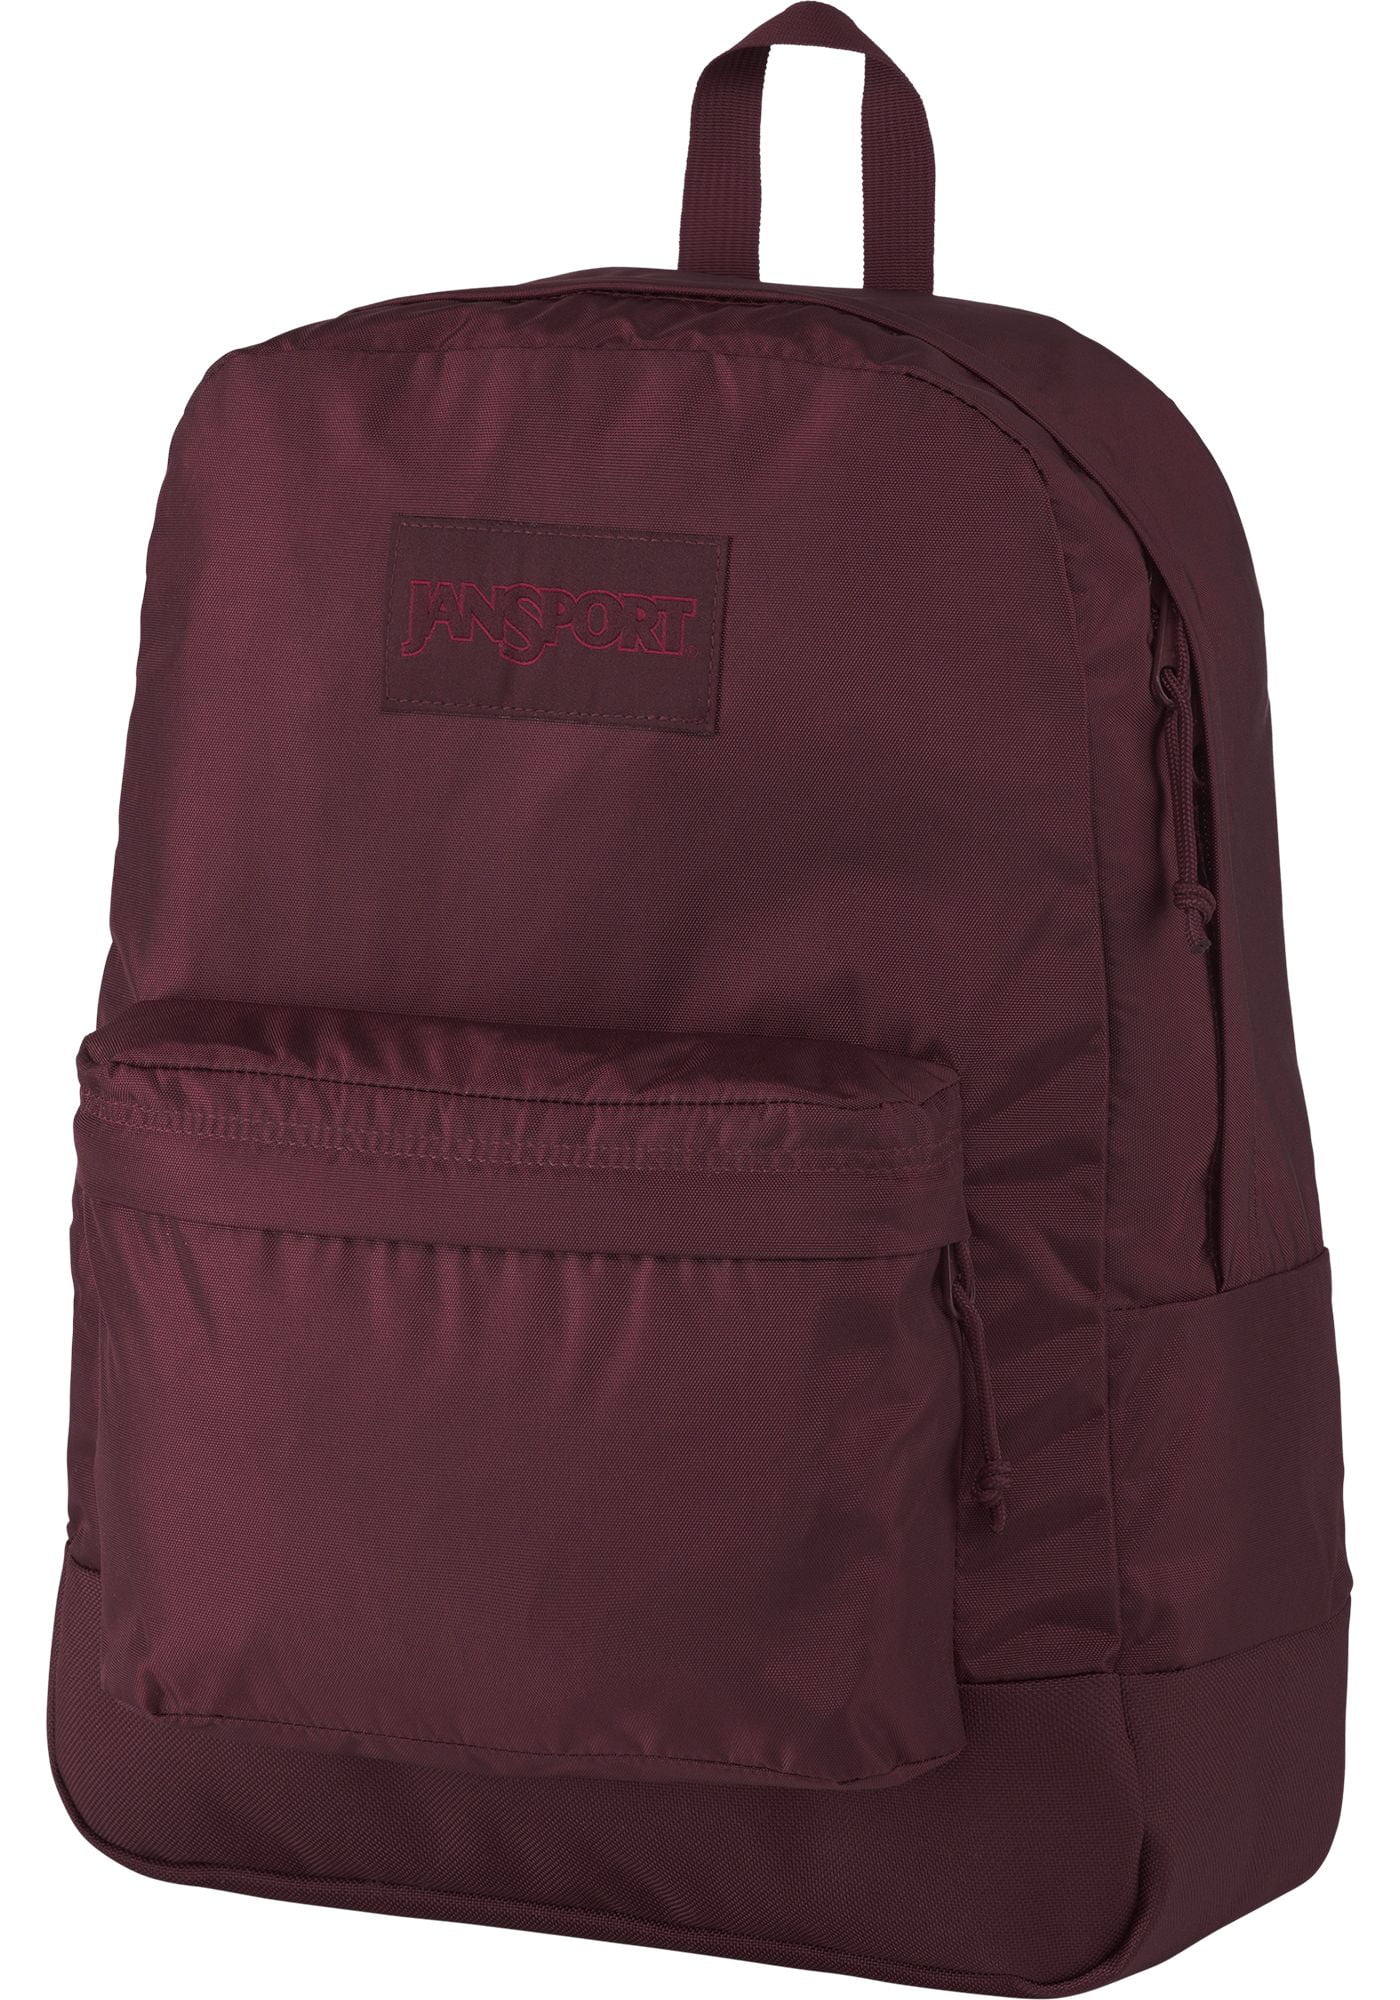 viking red jansport backpack